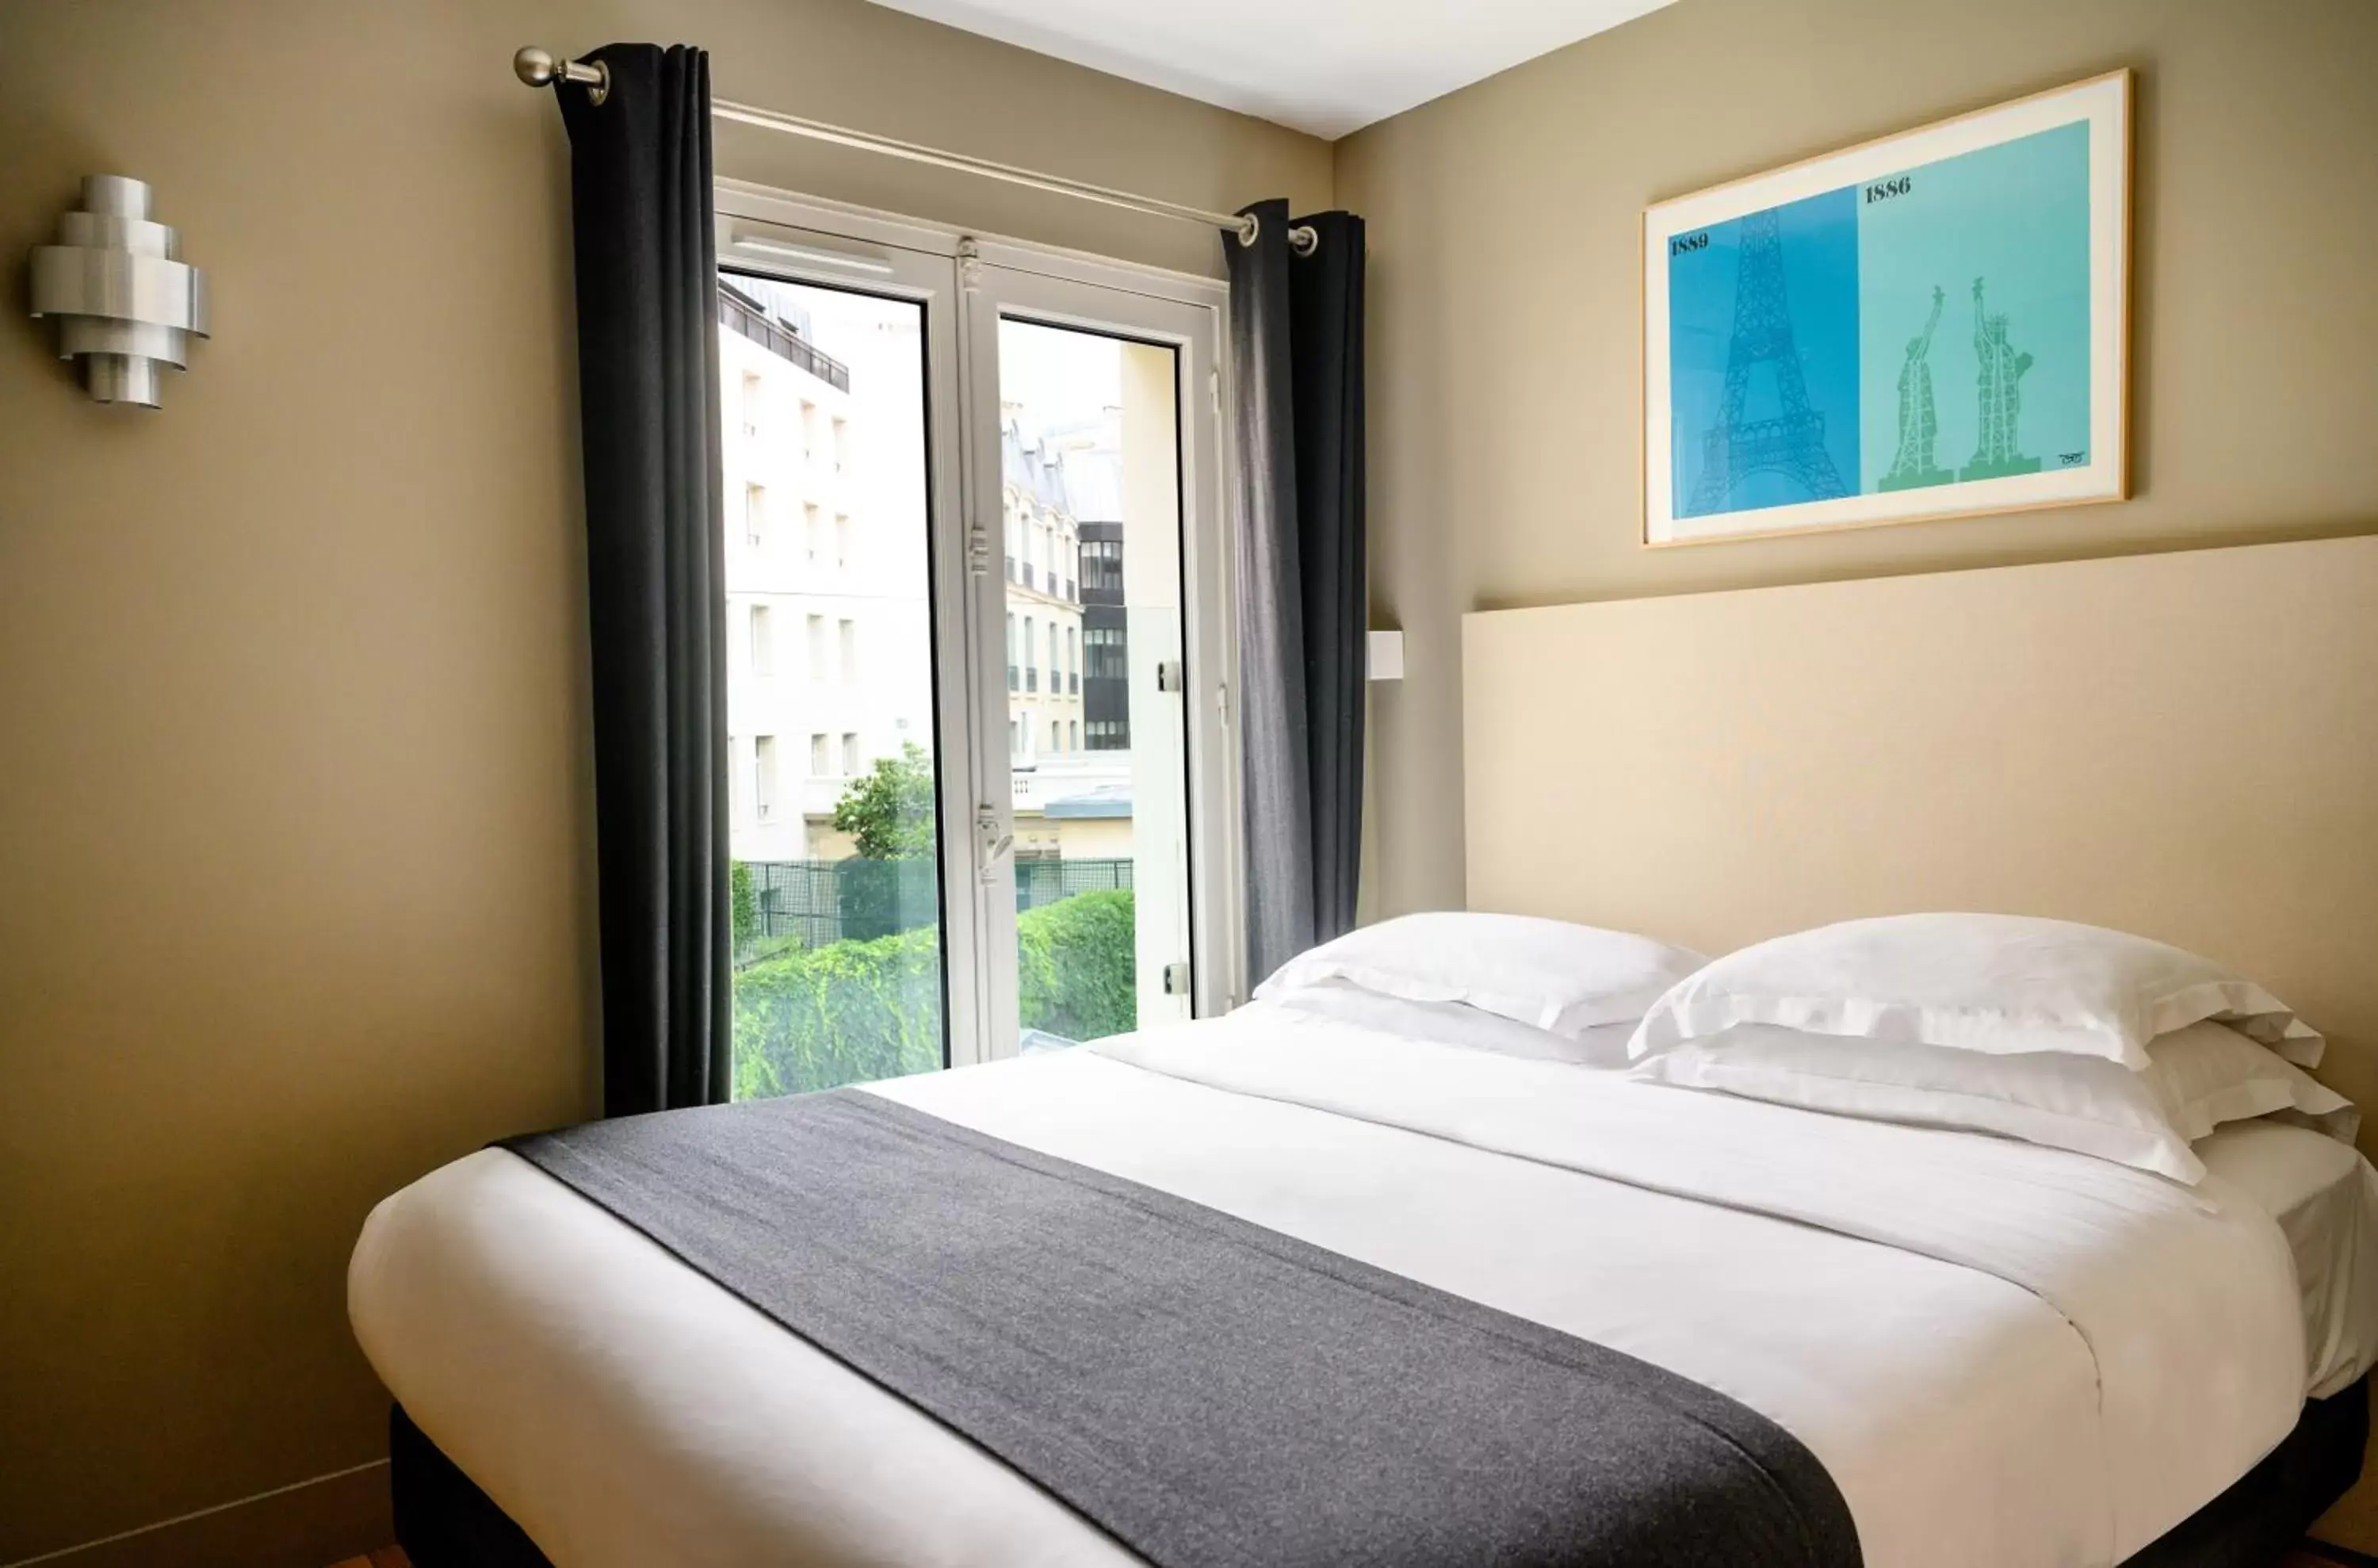 Bedroom, Bed in Suites & Hôtel Helzear Etoile